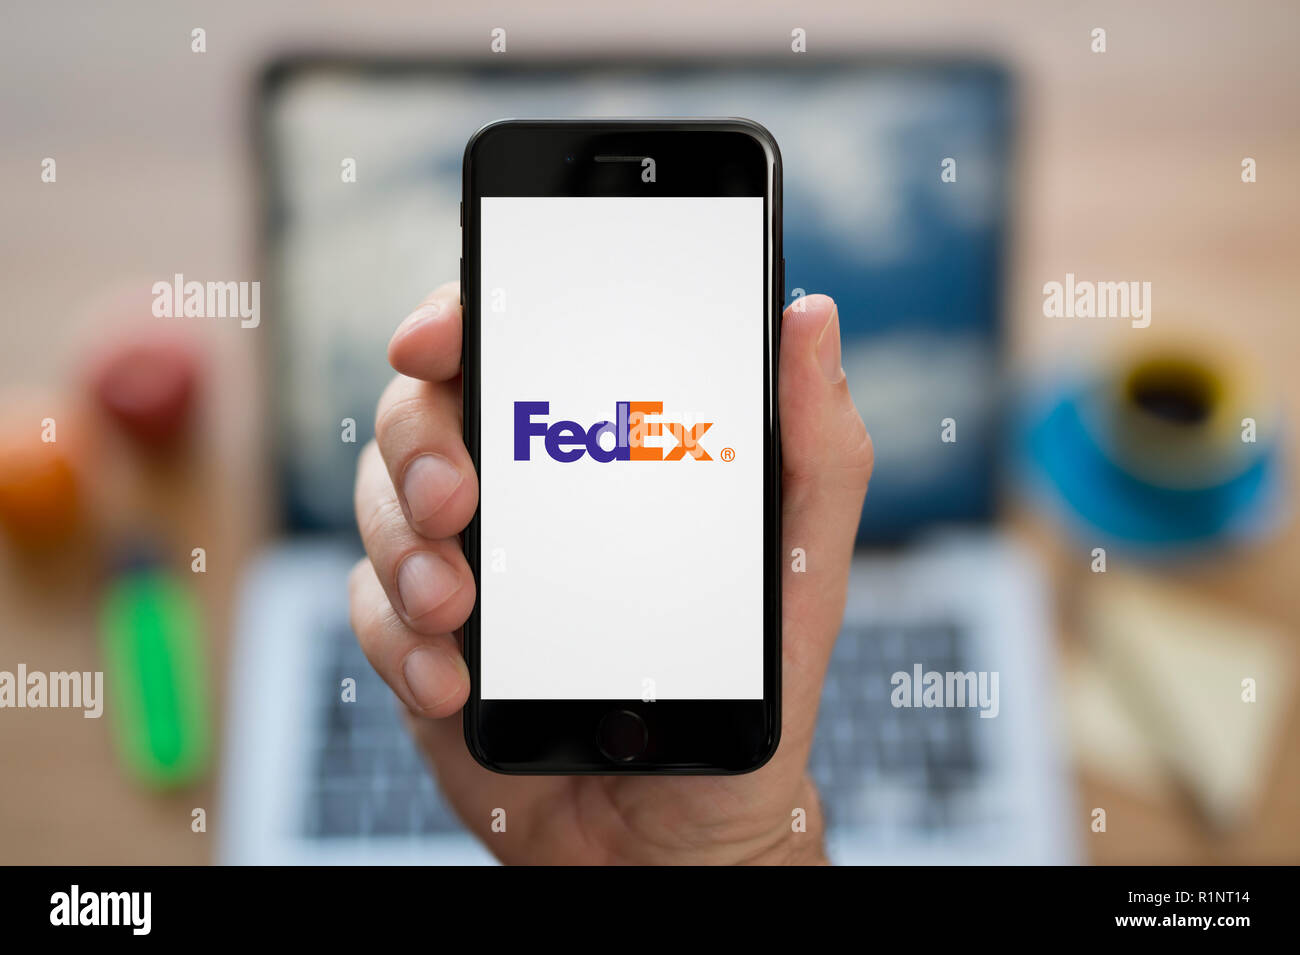 Un homme se penche sur son iPhone qui affiche le logo Fed Ex, tout en s'assit à son bureau informatique (usage éditorial uniquement). Banque D'Images